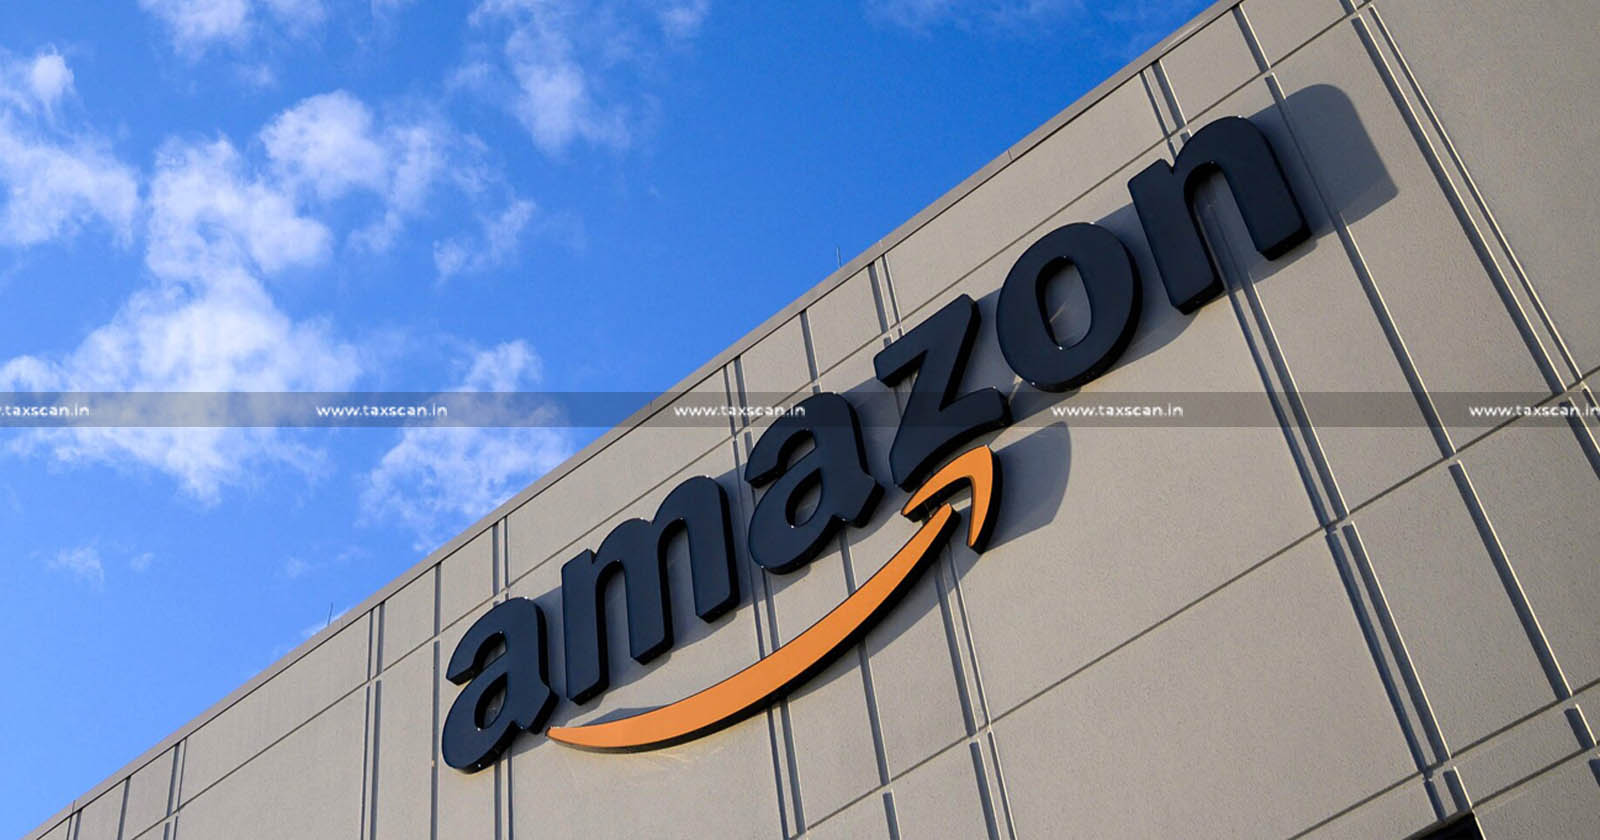 CA Vacancy in Amazon - CA Hiring in Amazon - Jobscan - CA Opportunities in Amazon - taxscan